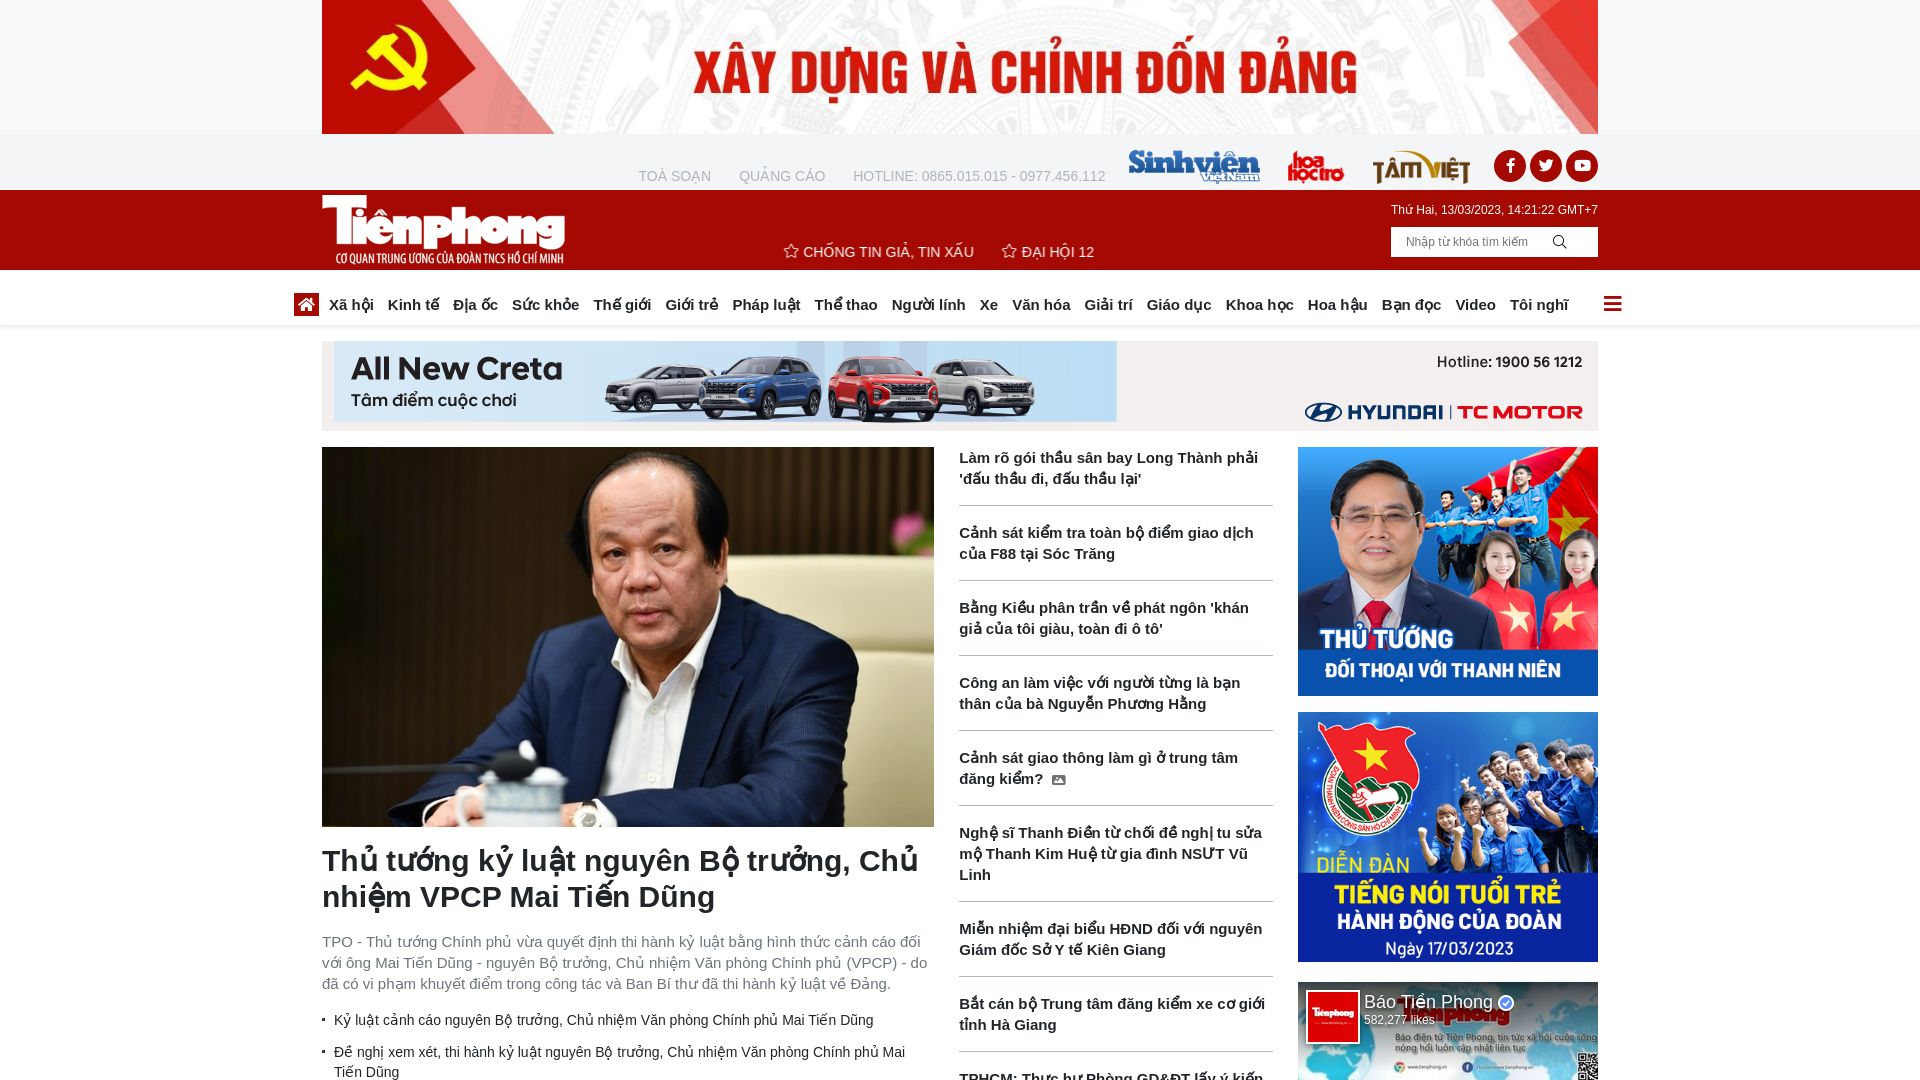 Stato del sito web tienphong.vn è   ONLINE